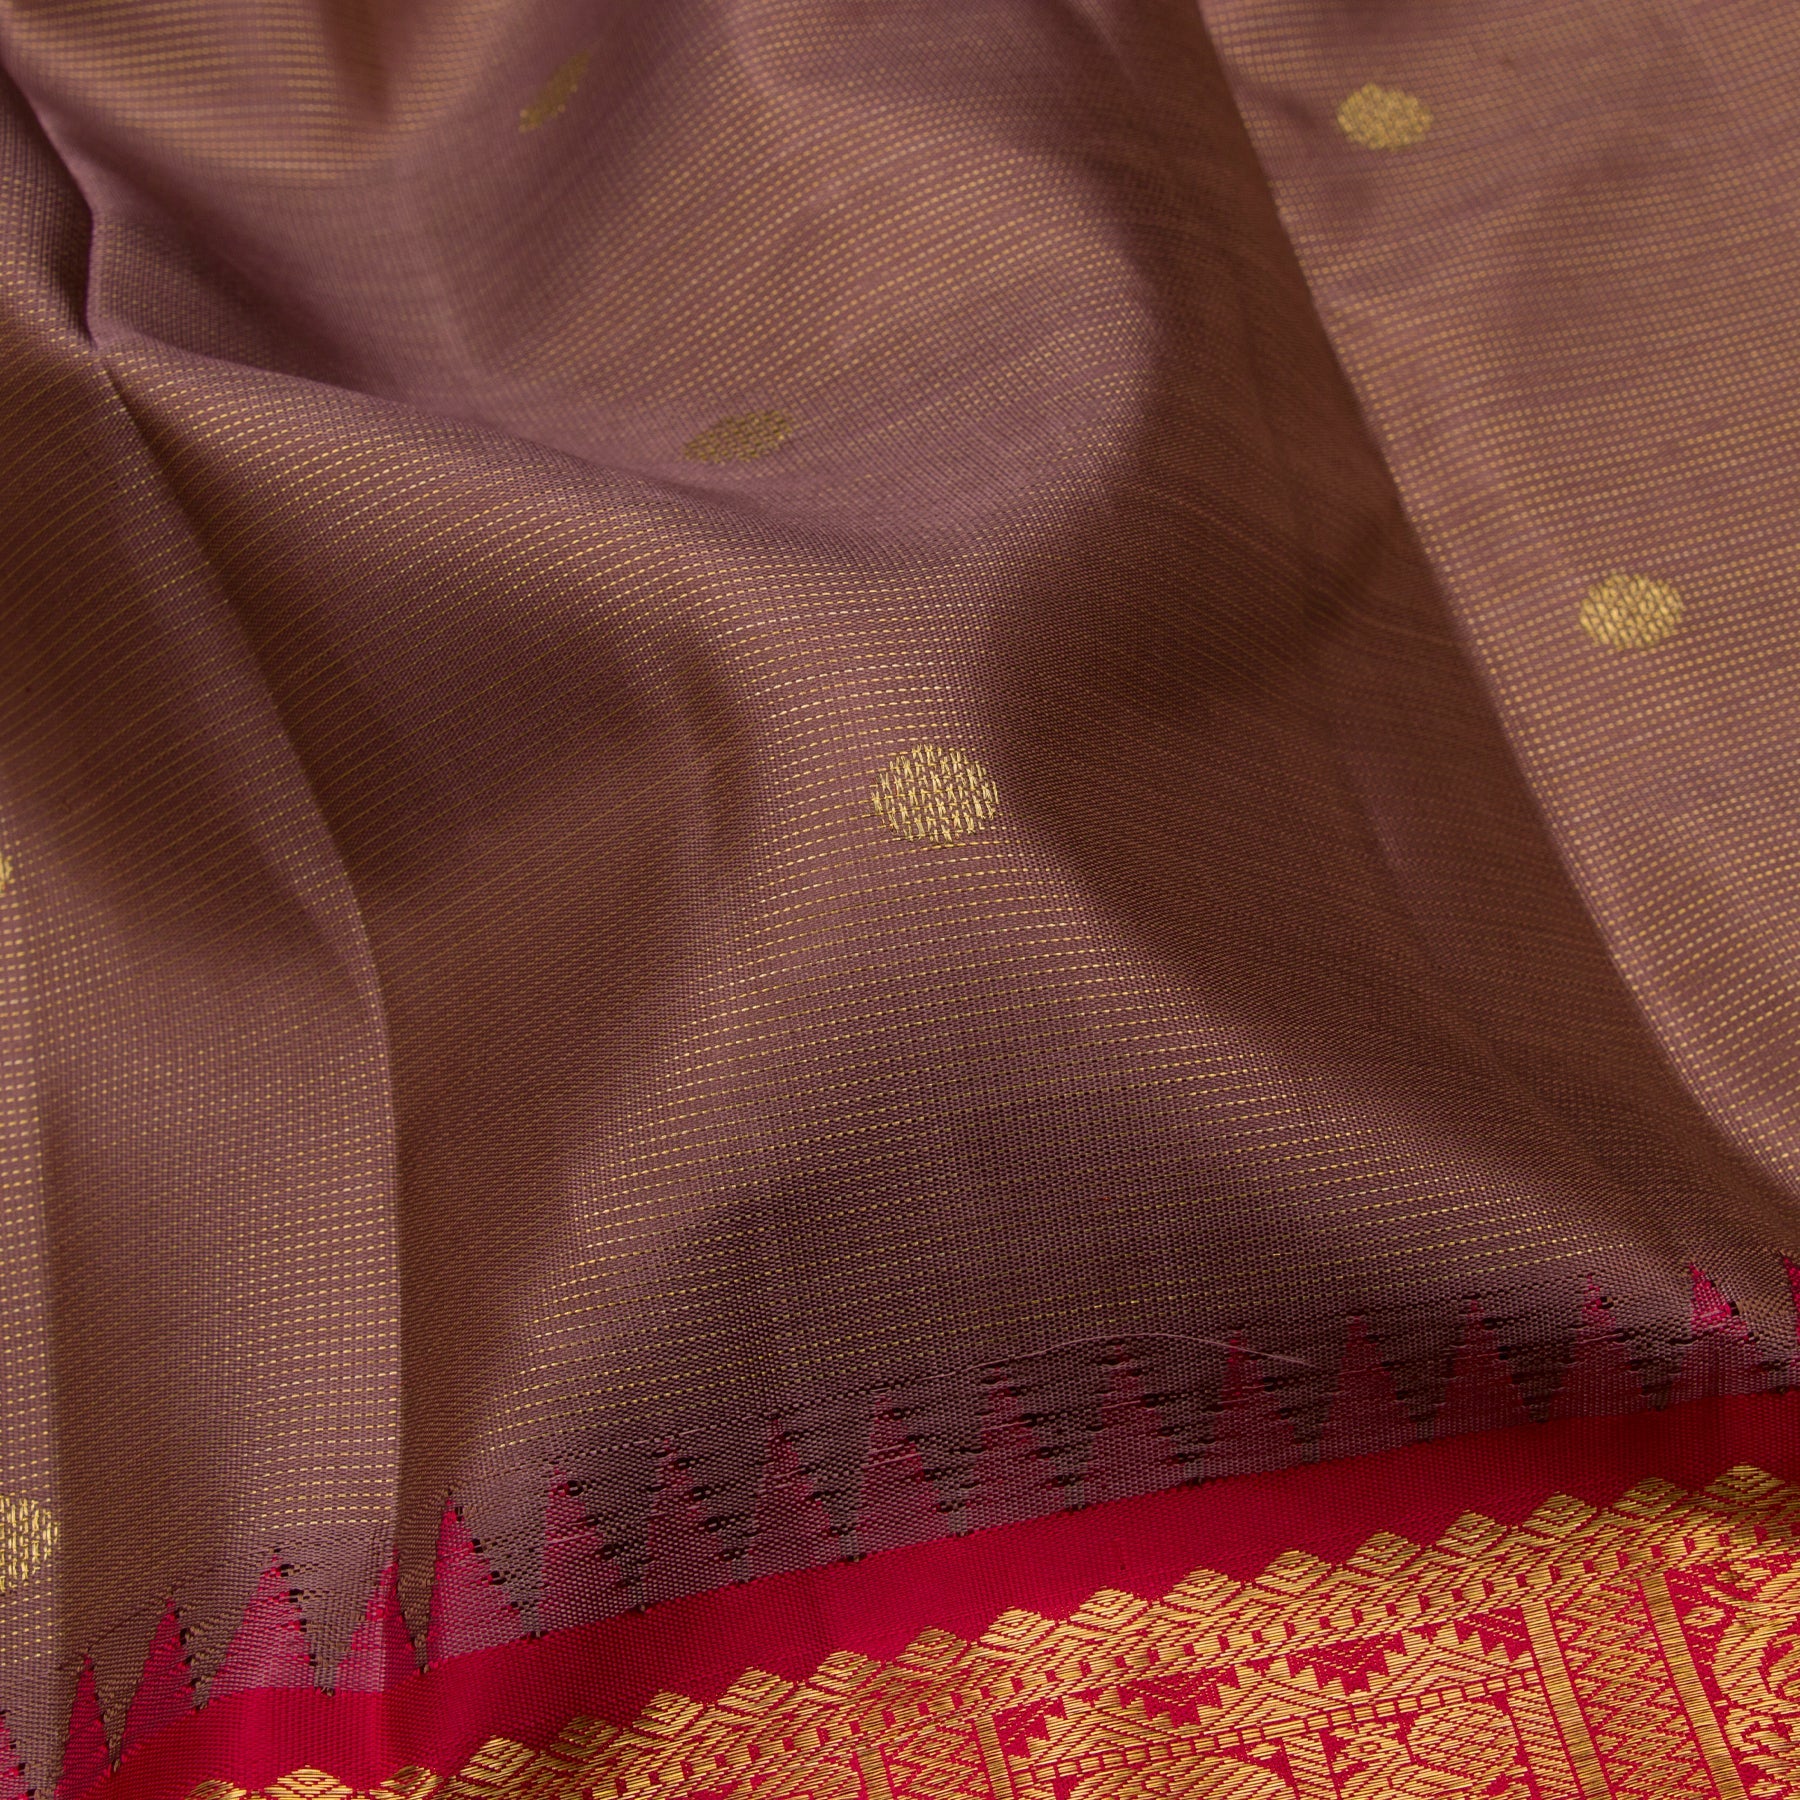 Kanakavalli Kanjivaram Silk Sari 23-595-HS001-11447 - Fabric View